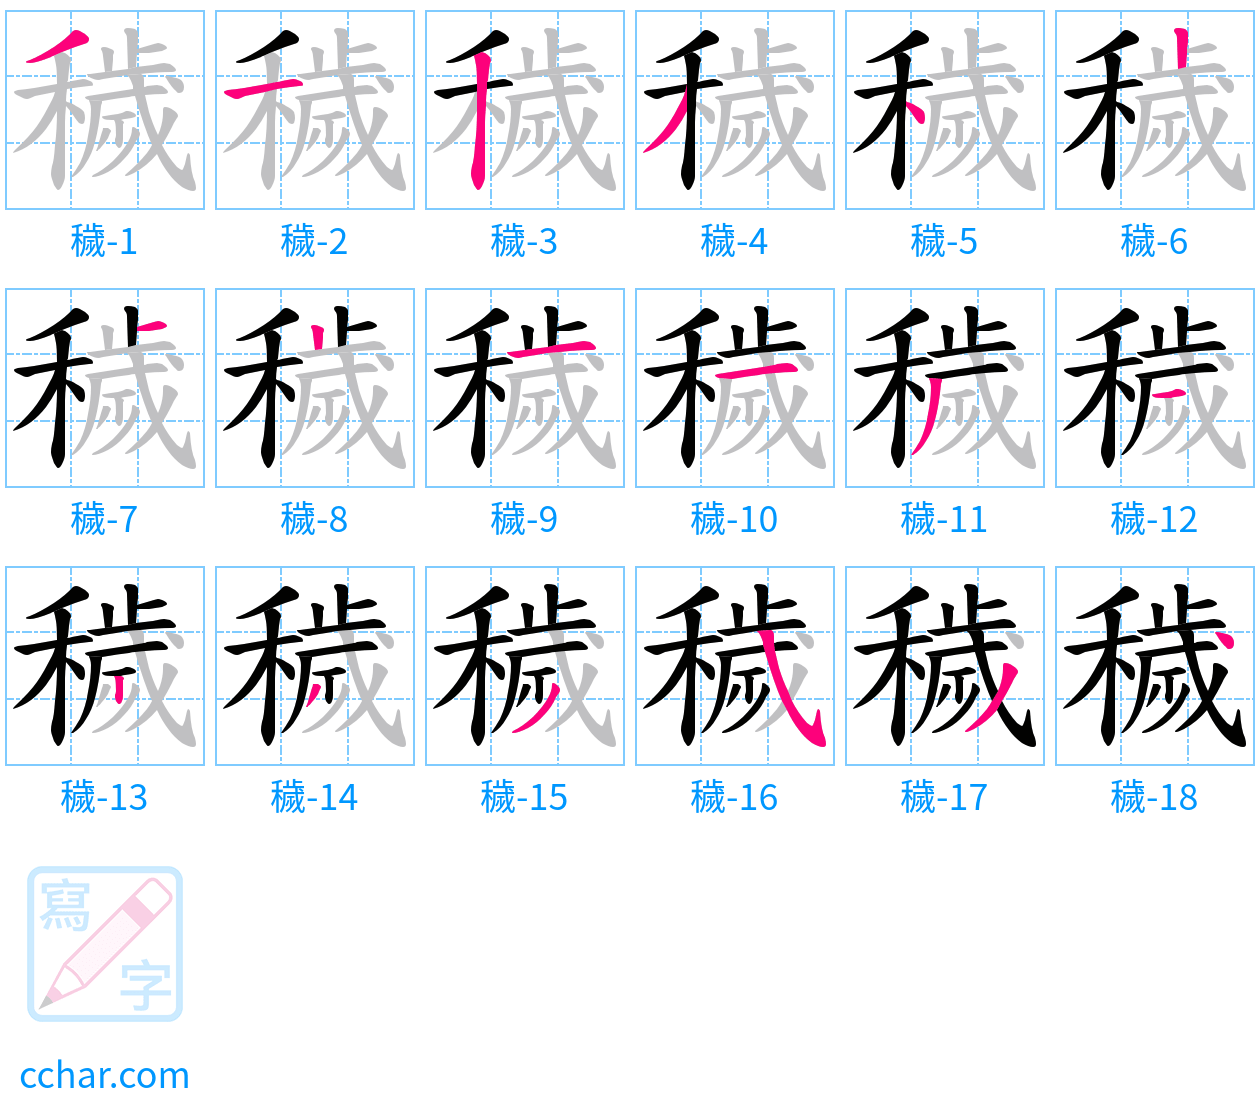 穢 stroke order step-by-step diagram